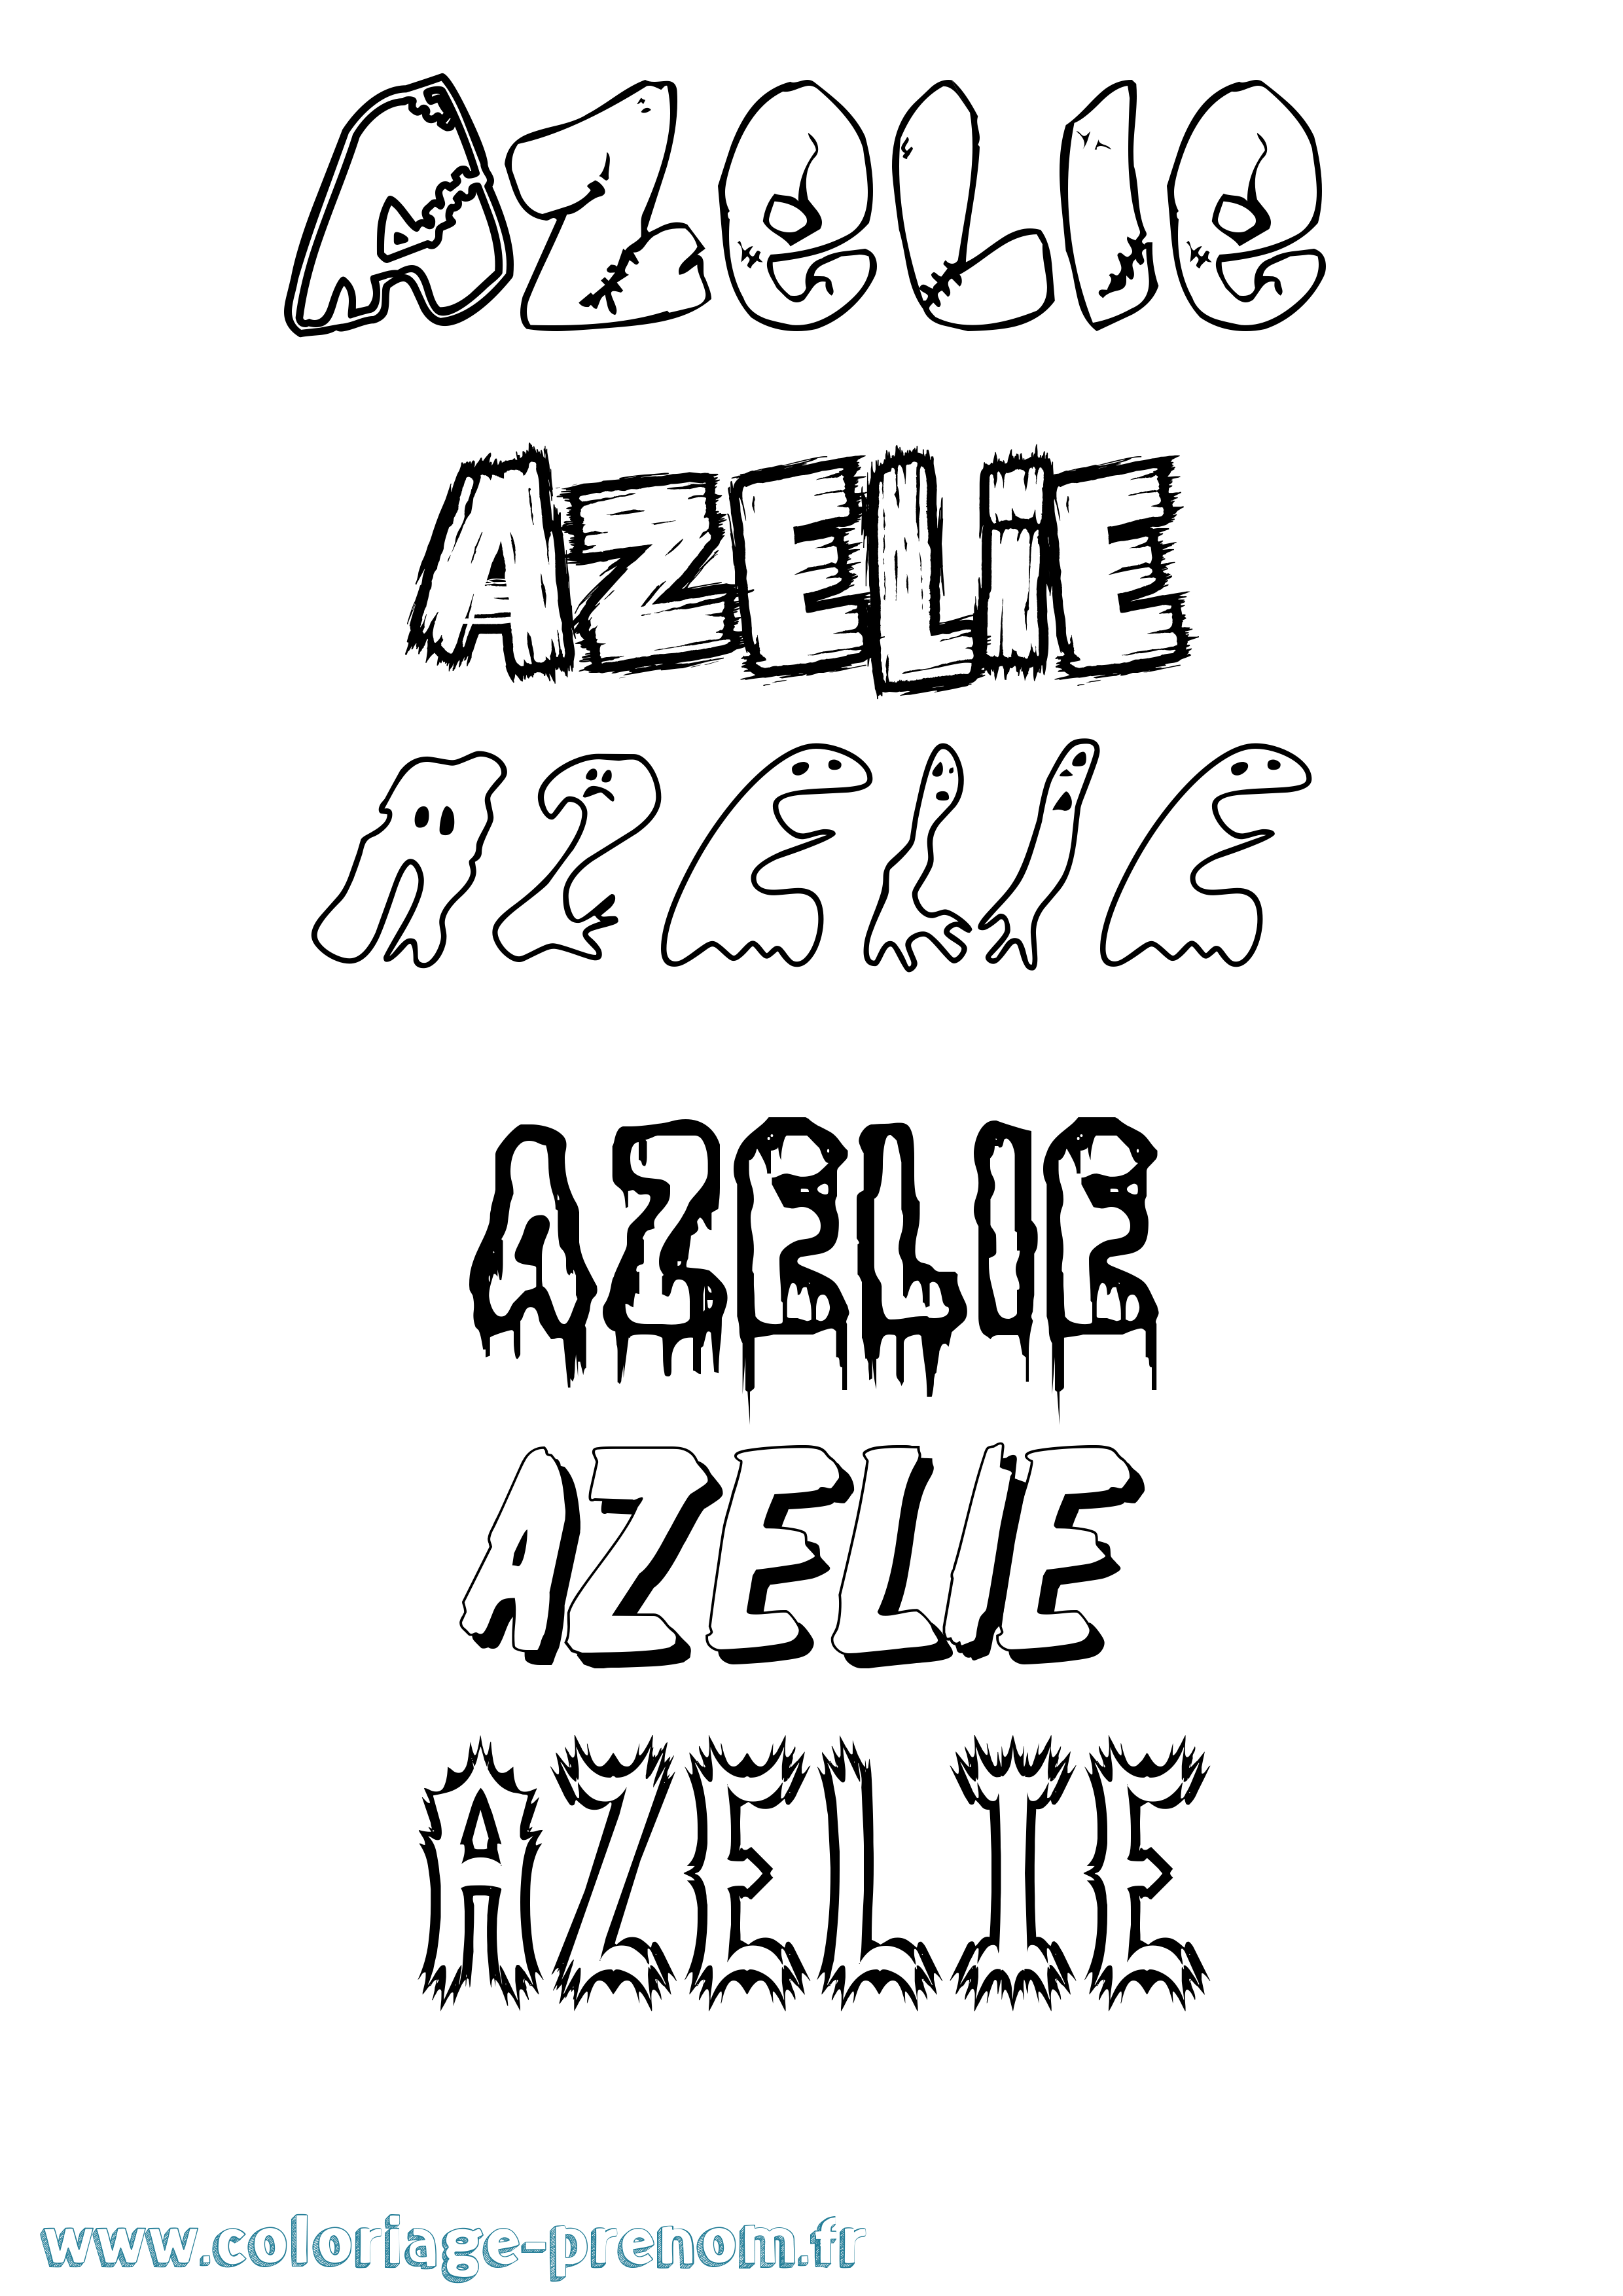 Coloriage prénom Azelie Frisson